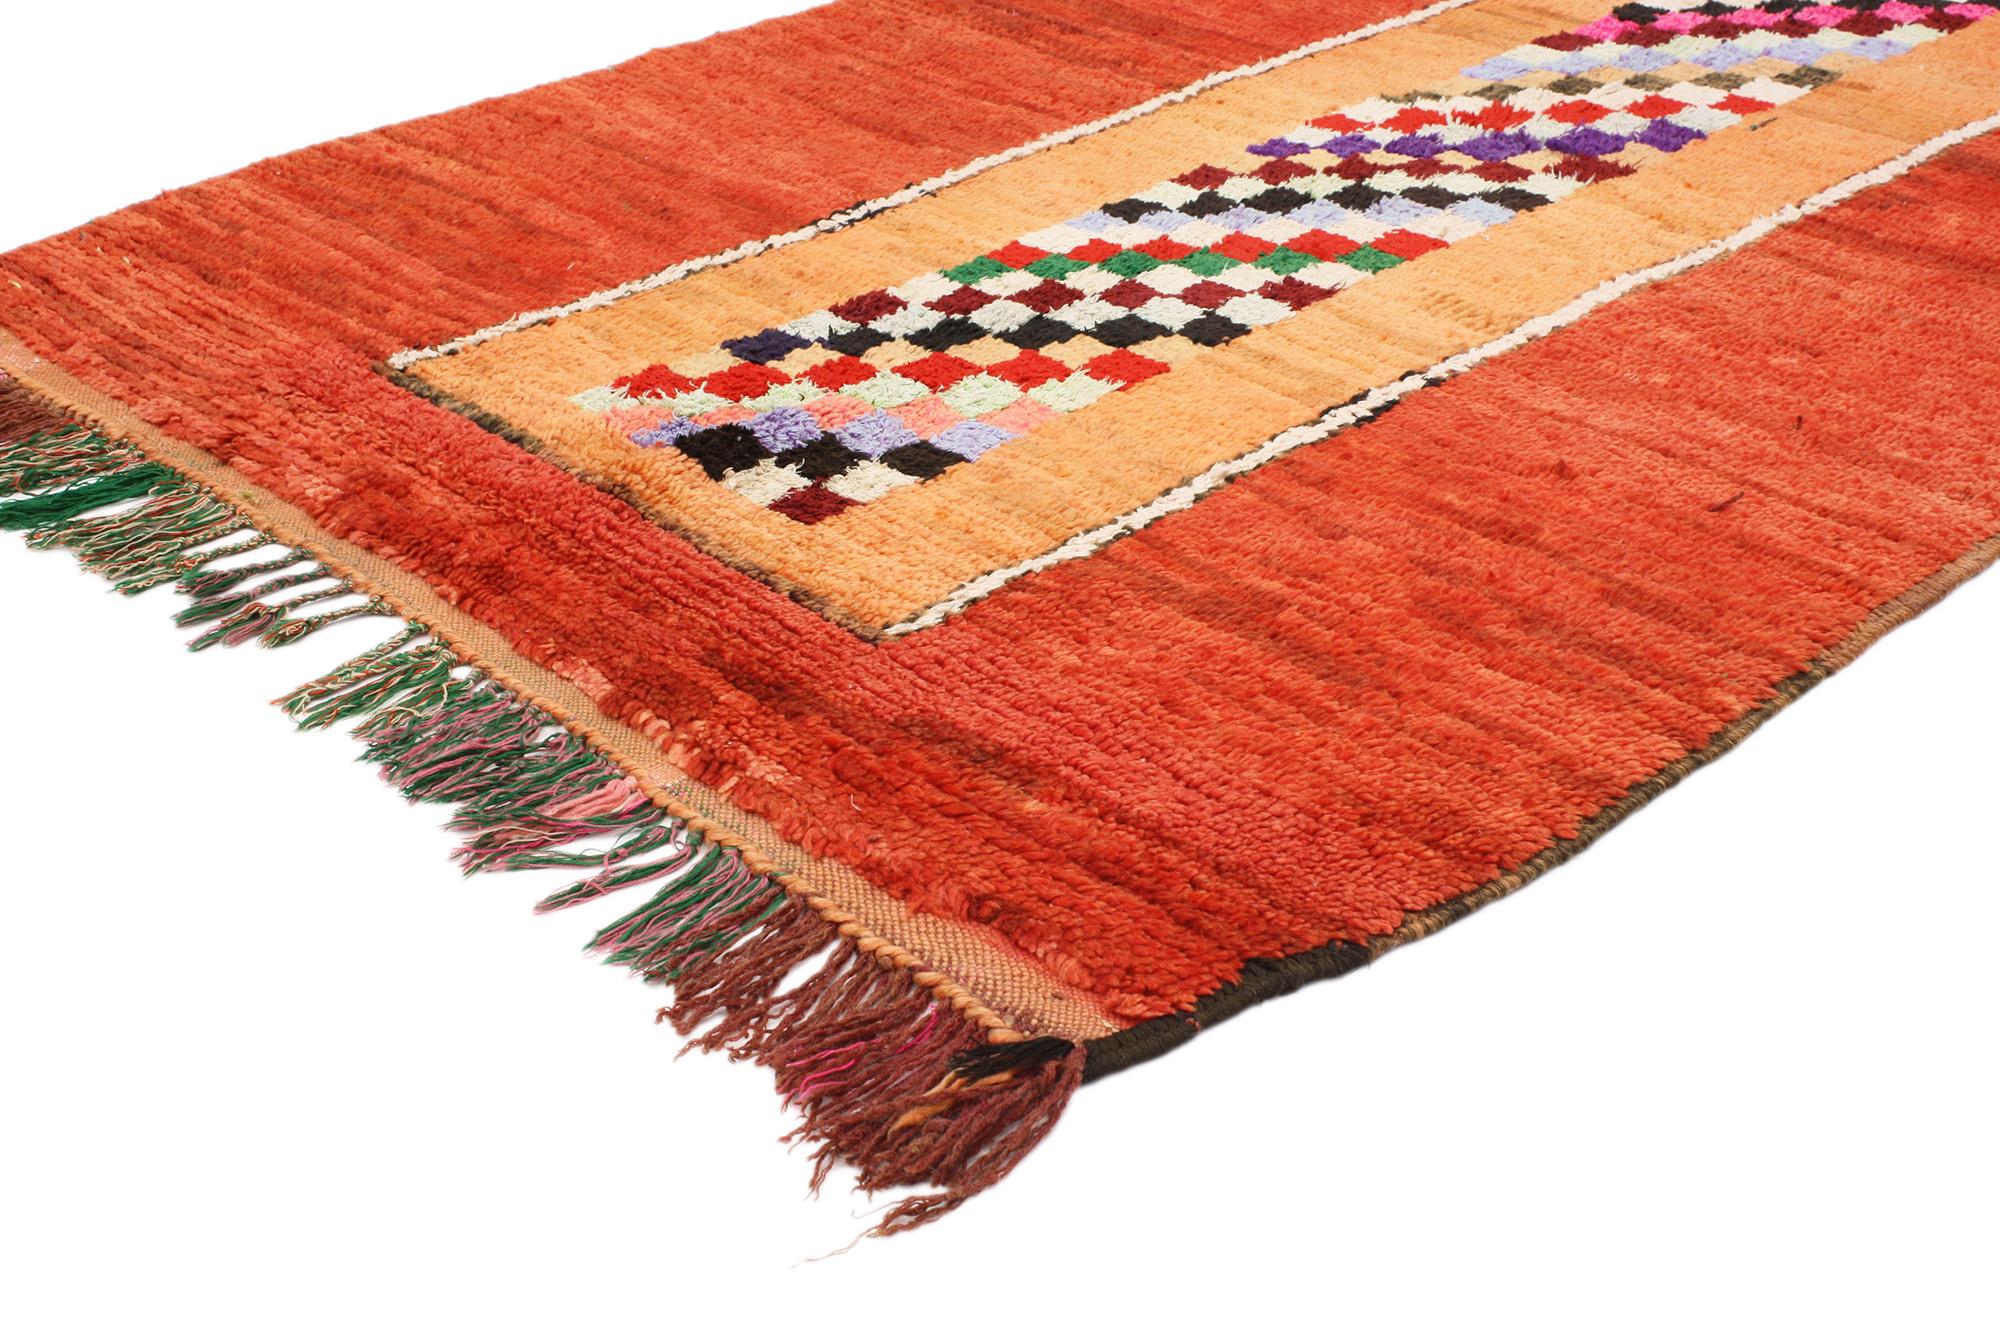 20499 Marokkanischer Teppich Vintage Red Boujad, 04'01 x 06'00. Der marokkanische Teppich Boujad aus handgeknüpfter Wolle im Vintage-Stil zeigt ein auffälliges Schachbrettmuster vor einem Hintergrund aus orangefarbenem und rotem Abrasch, wodurch